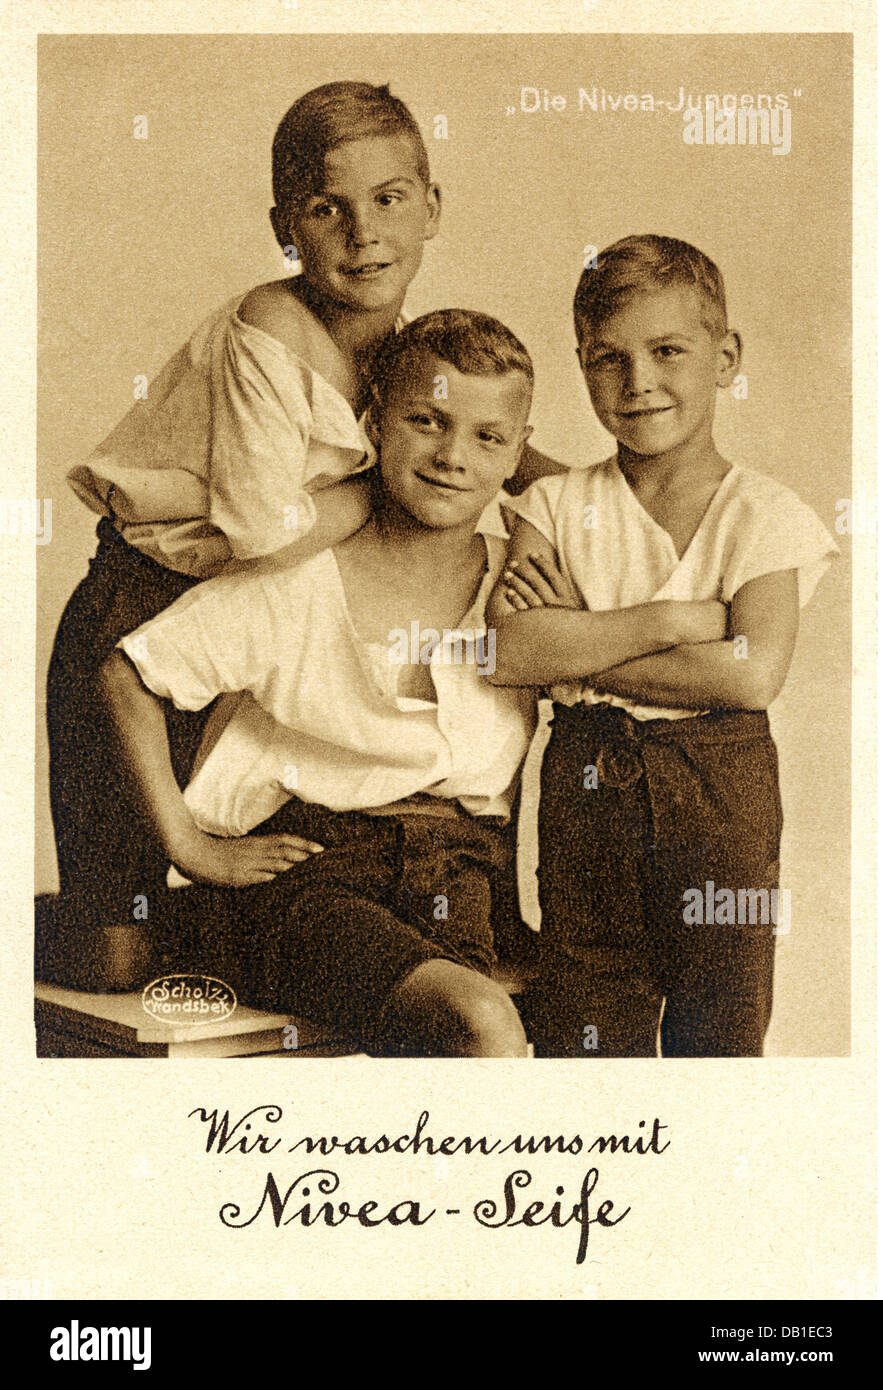 Pubblicità, cosmetici, i Nivea Boys, pubblicità per il sapone Nivea, slogan pubblicitario: 'Wir waschen uns mit Nivea-Seife' (ci laviamo con il sapone Nivea), Germania, 1925, diritti aggiuntivi-clearences-non disponibile Foto Stock